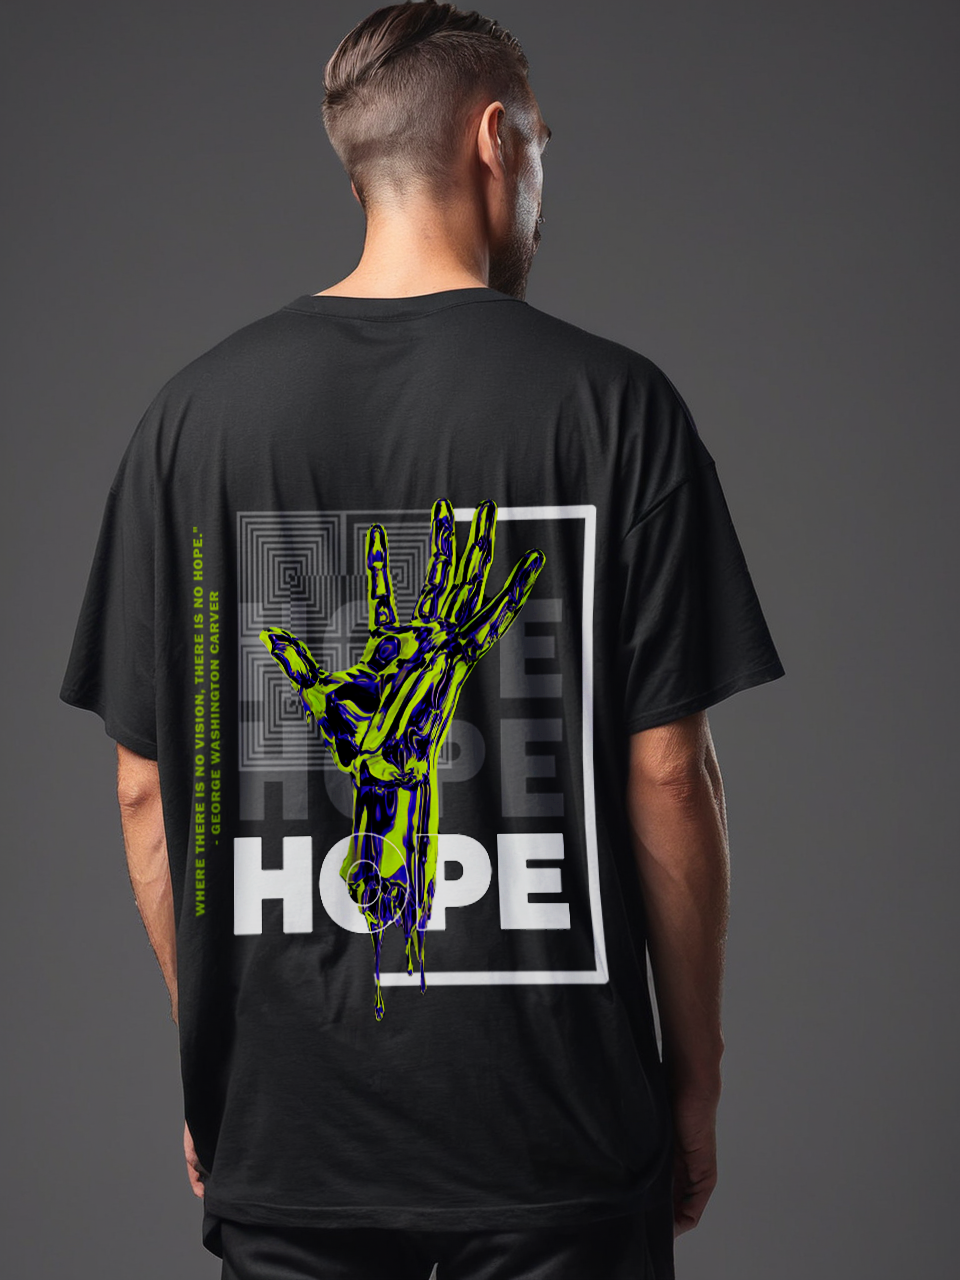 Hope oversize T-shirt, black back side